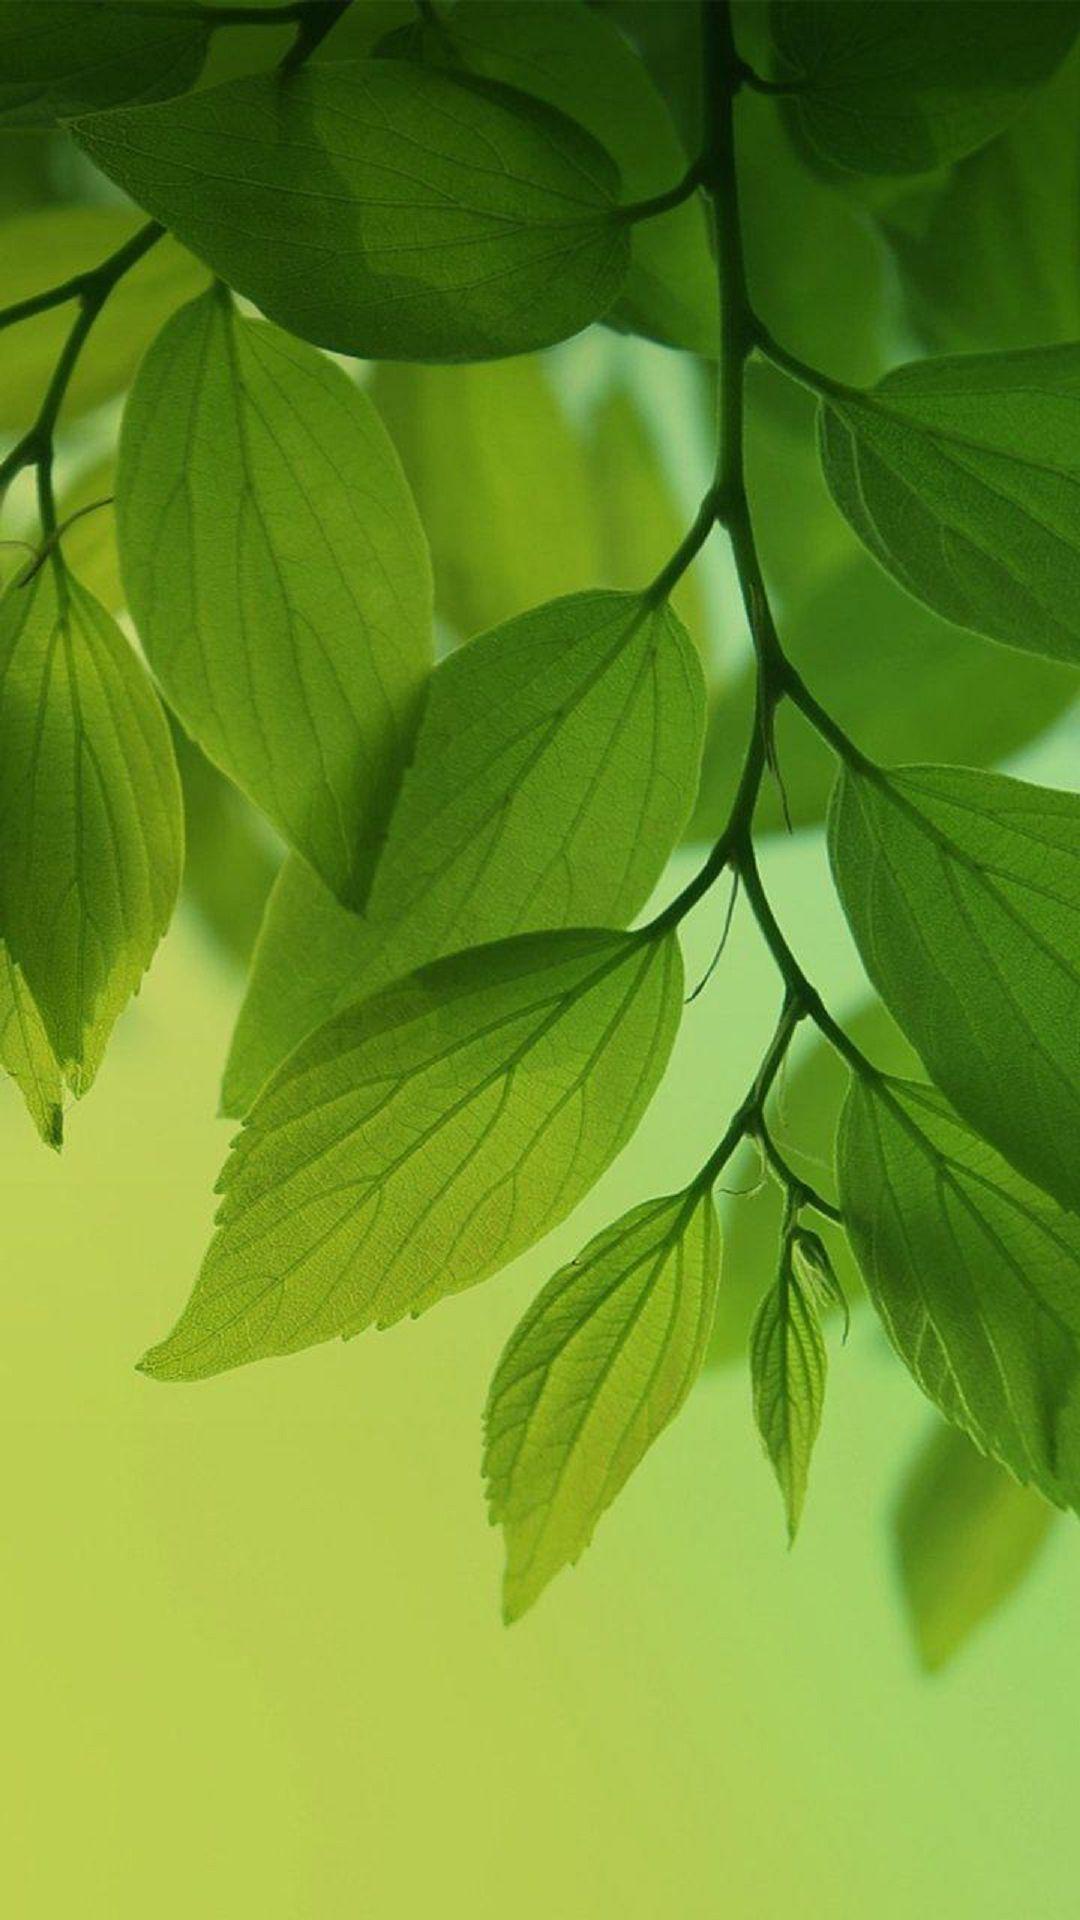 Chiếc lá xanh (Green leaf): Sắc xanh của chiếc lá thật tuyệt vời và đầy sức sống. Hình ảnh với chiếc lá xanh sẽ giúp bạn tìm lại vẻ đẹp tự nhiên và sự thanh thản trong tâm hồn. Hãy chiêm ngưỡng những bức hình tuyệt đẹp này để cảm nhận nguồn năng lượng mới tràn đầy trong cuộc sống.